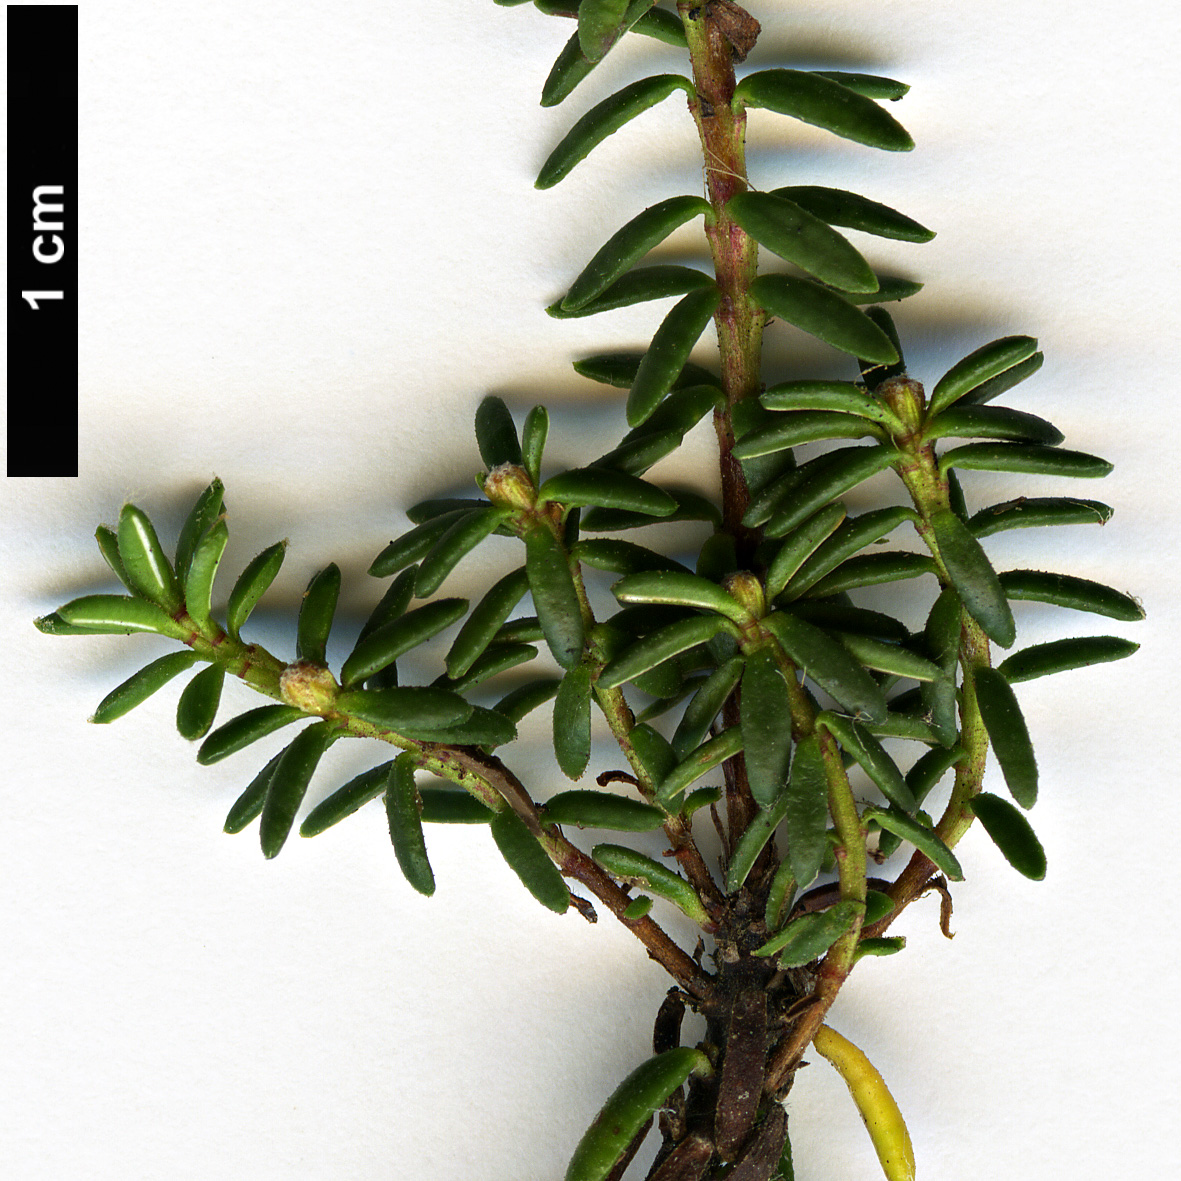 High resolution image: Family: Ericaceae - Genus: Empetrum - Taxon: nigrum